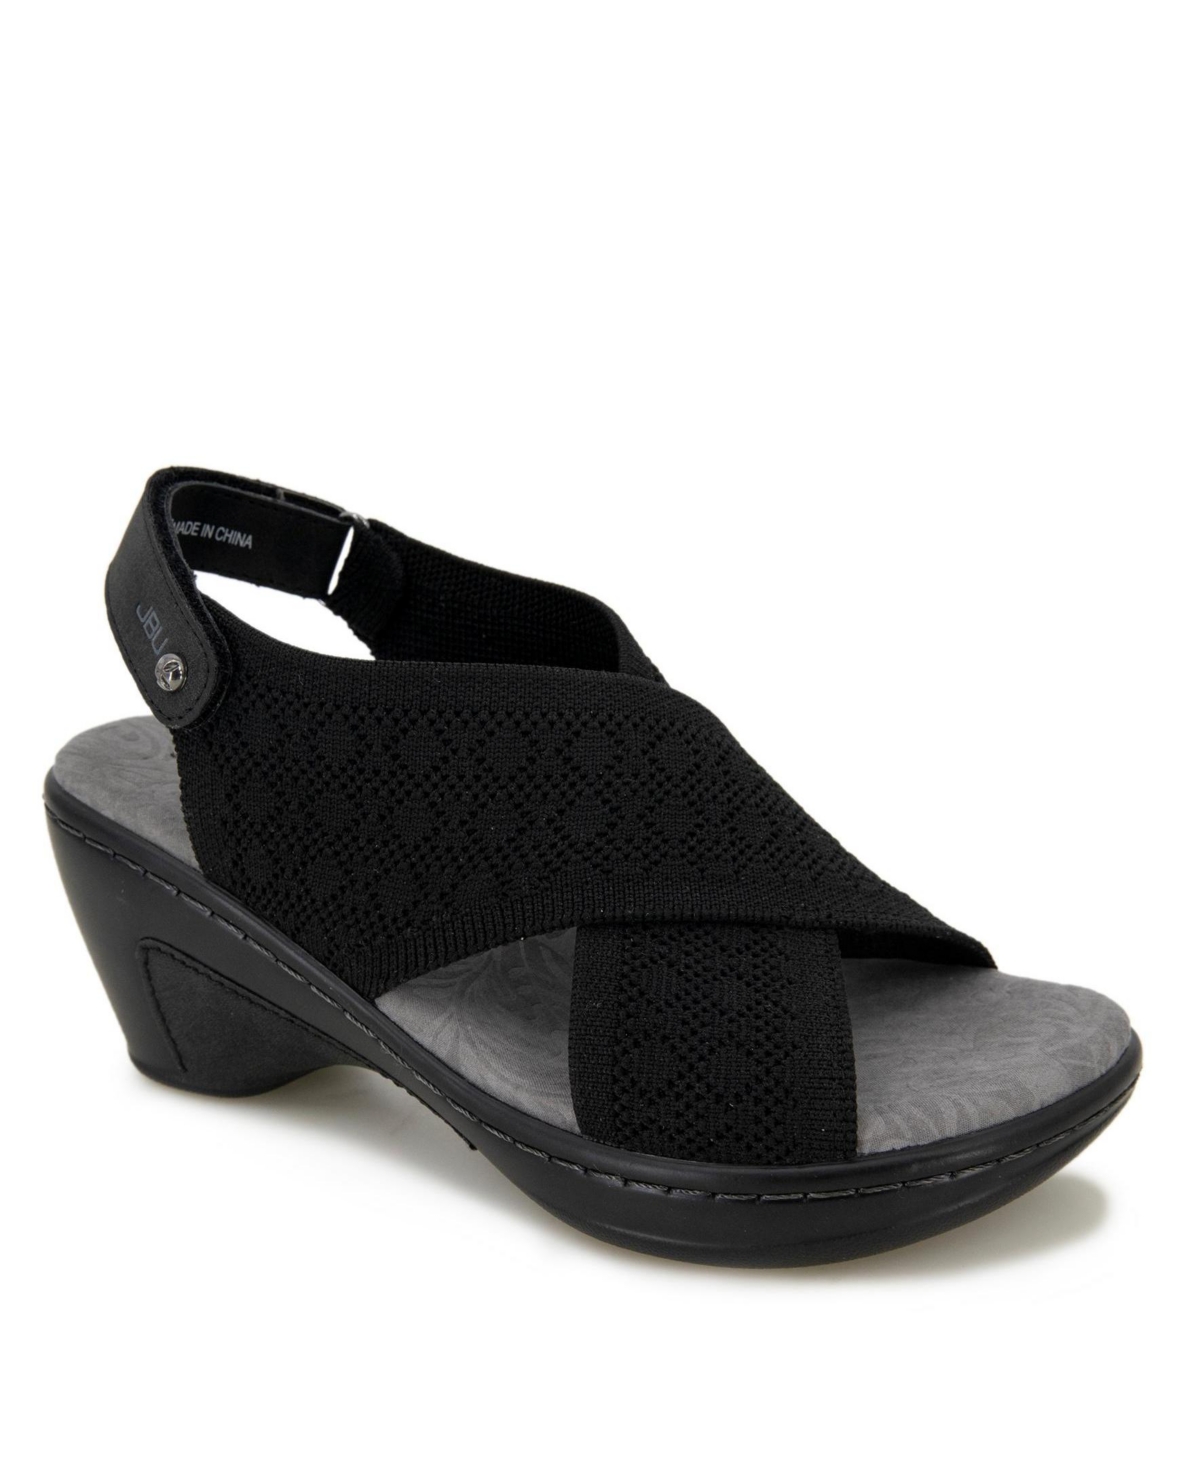 Women's Alyssa Wedge Sandals - Black